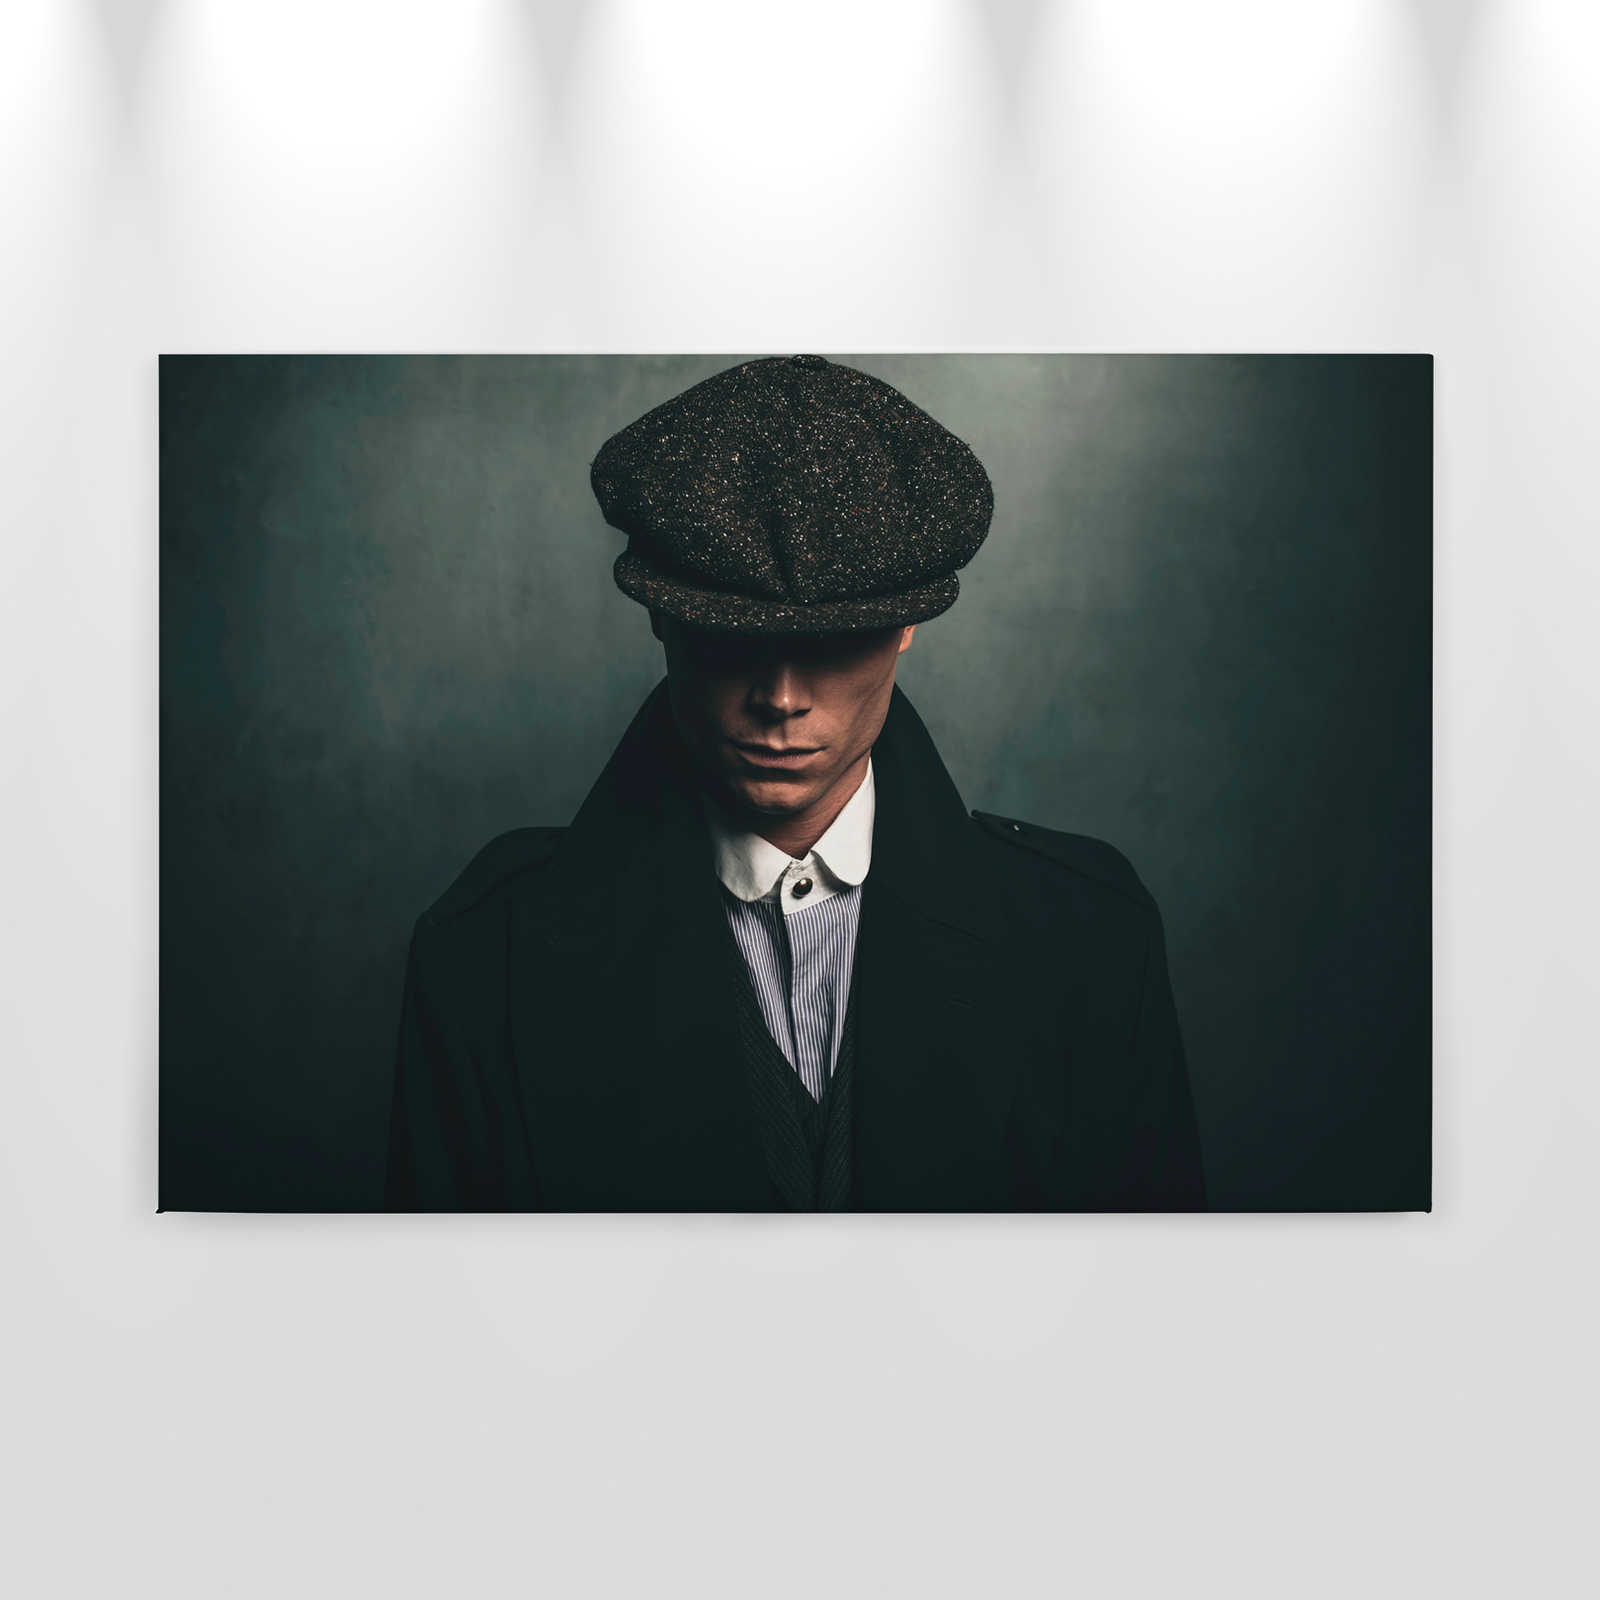             Roger 1 - Toile Gangster Portrait, Style rétro - 0,90 m x 0,60 m
        